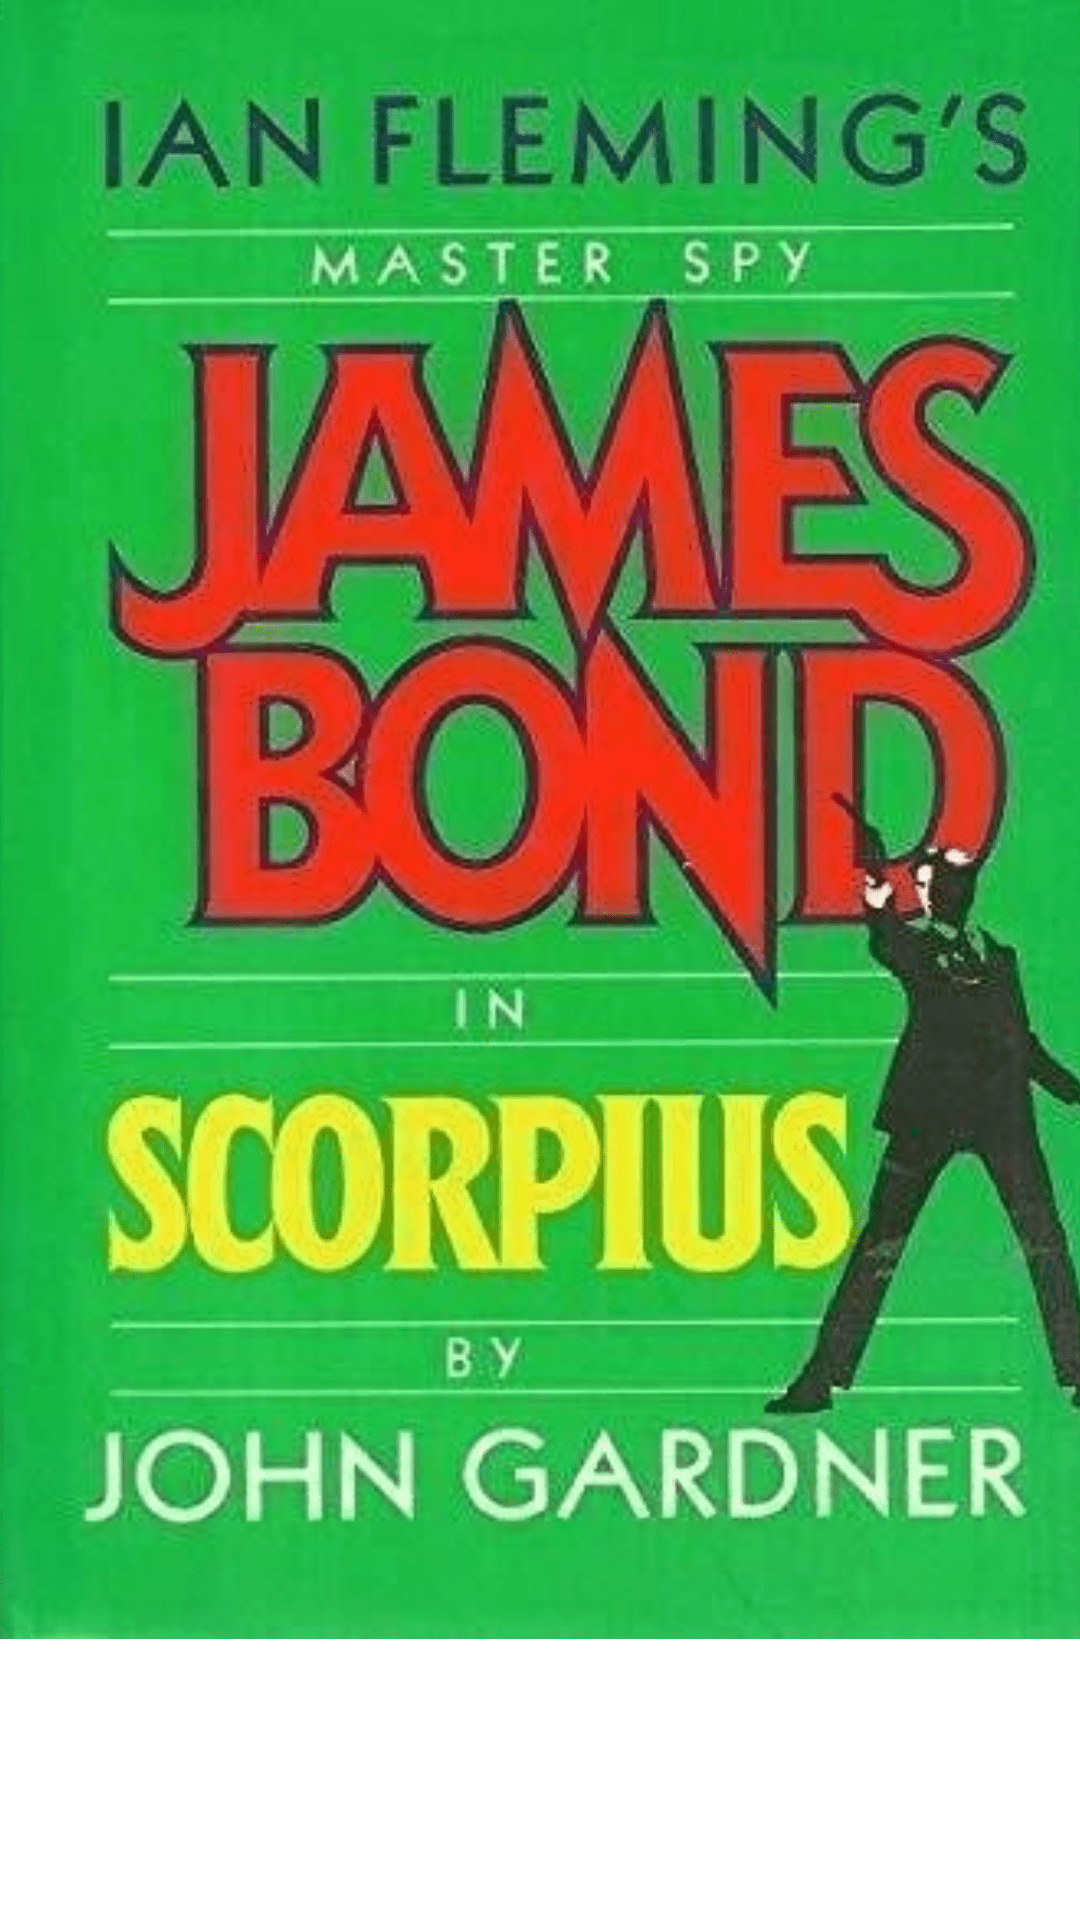 Scorpius by John Gardner